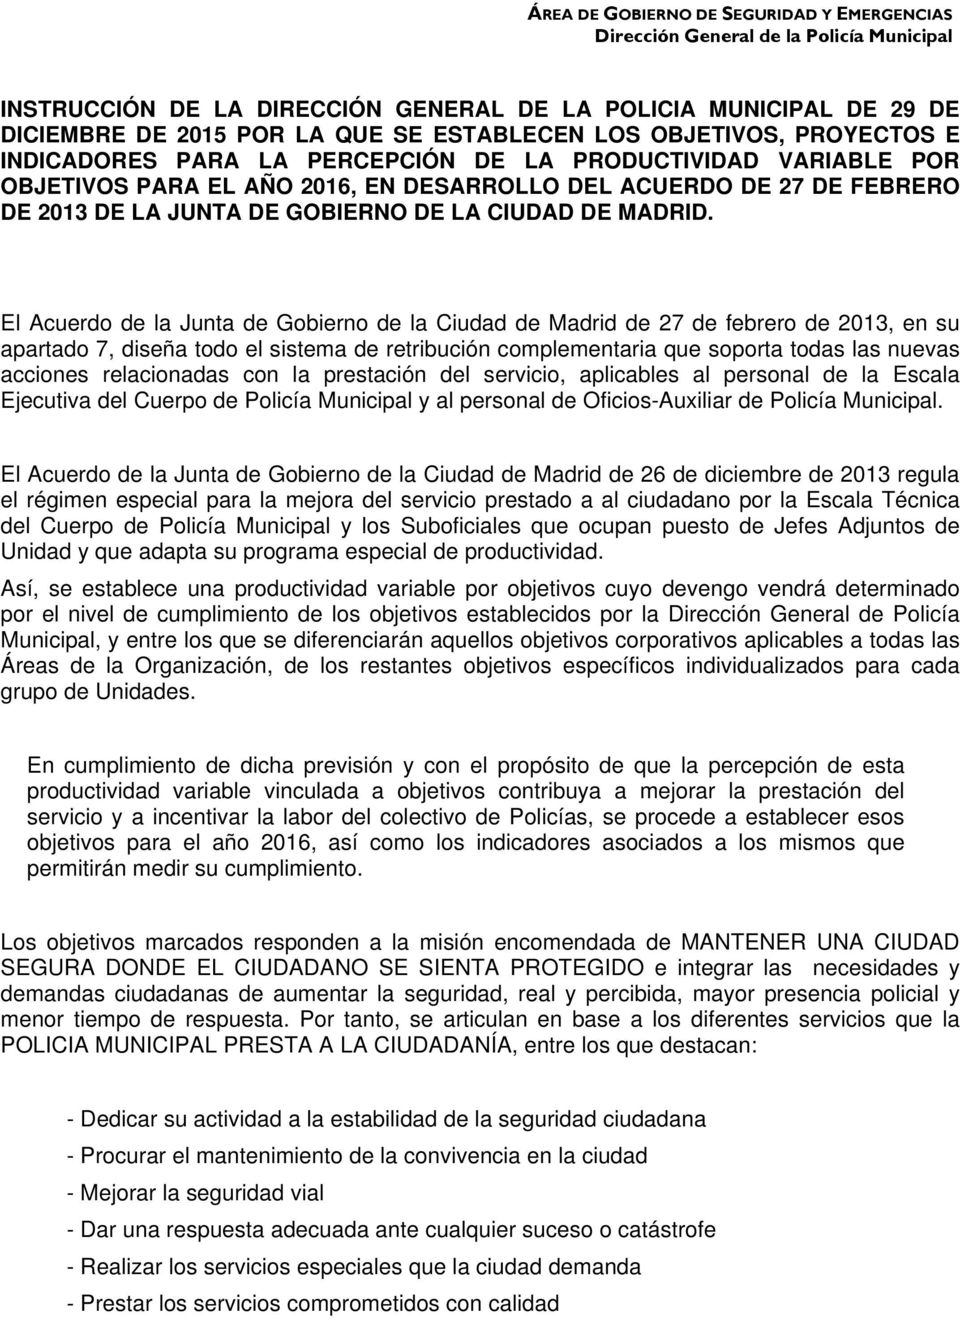 El Acuerdo de la Junta de Gobierno de la Ciudad de Madrid de 27 de febrero de 2013, en su apartado 7, diseña todo el sistema de retribución complementaria que soporta todas las nuevas acciones